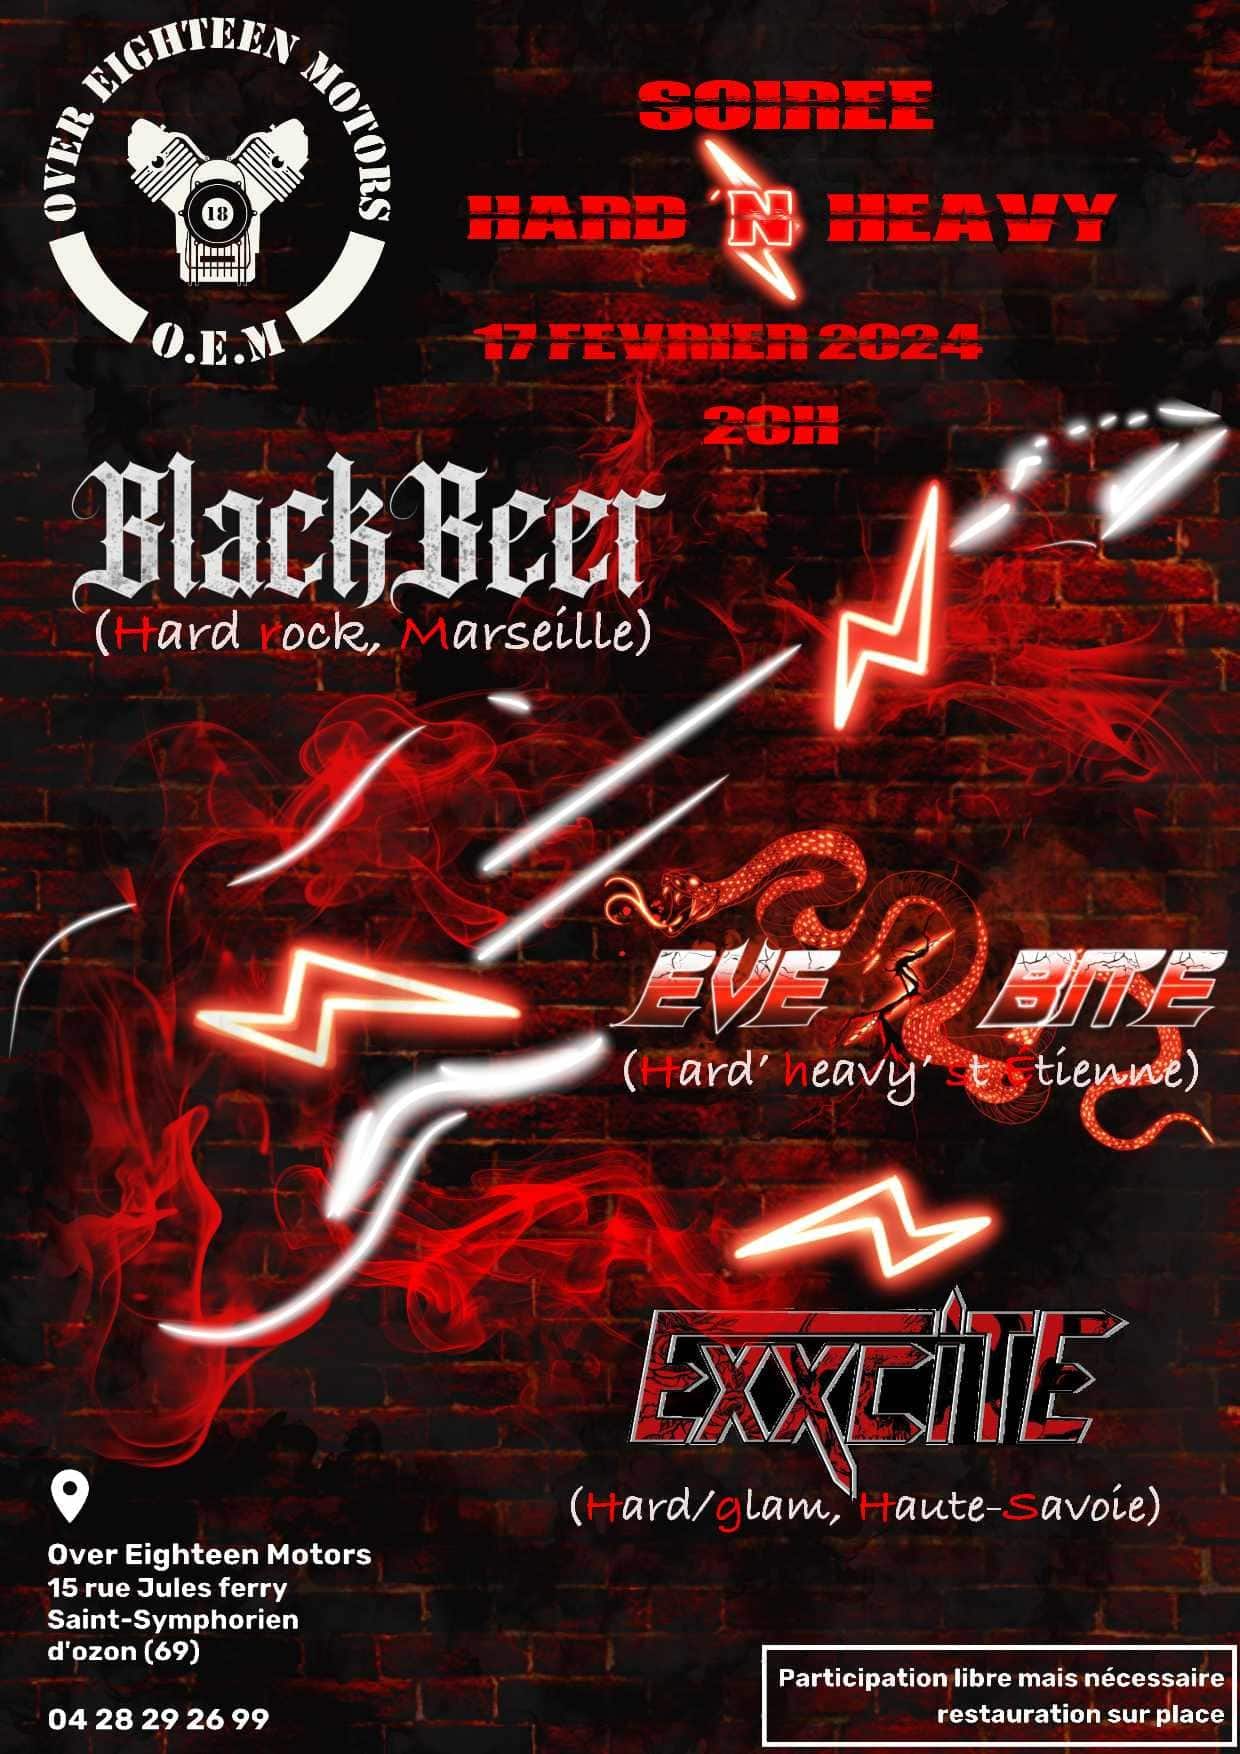 Concert Exxcite + Eve’s Bite + Blackbeer